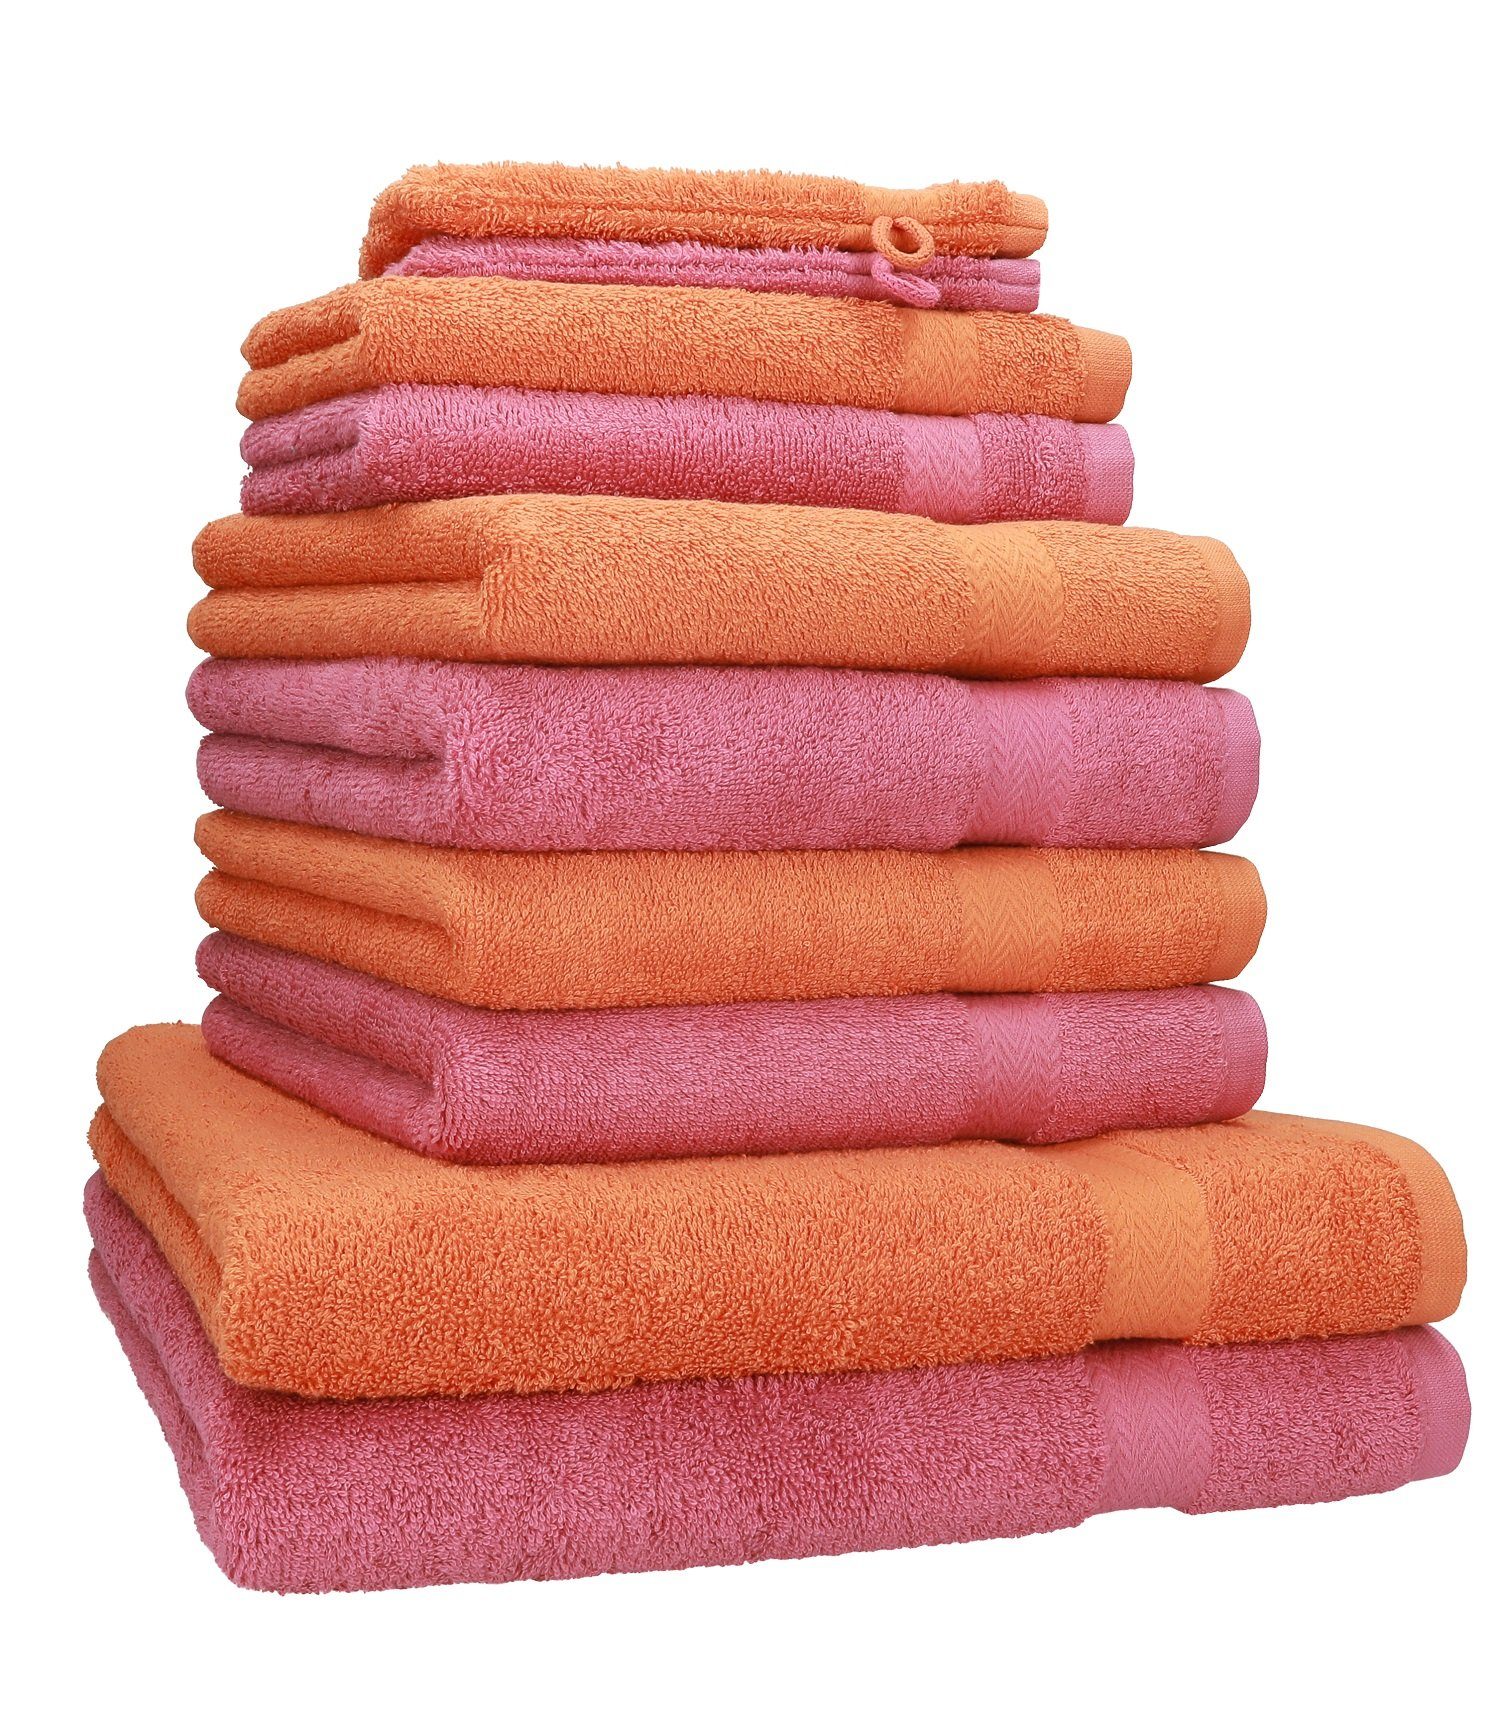 Betz Handtuch Set »10-TLG. Handtuch-Set Premium 100% Baumwolle 2  Duschtücher 4 Handtücher 2 Gästetücher 2 Waschhandschuhe Farbe Orange Terra  & Altrosa« (10-tlg) online kaufen | OTTO